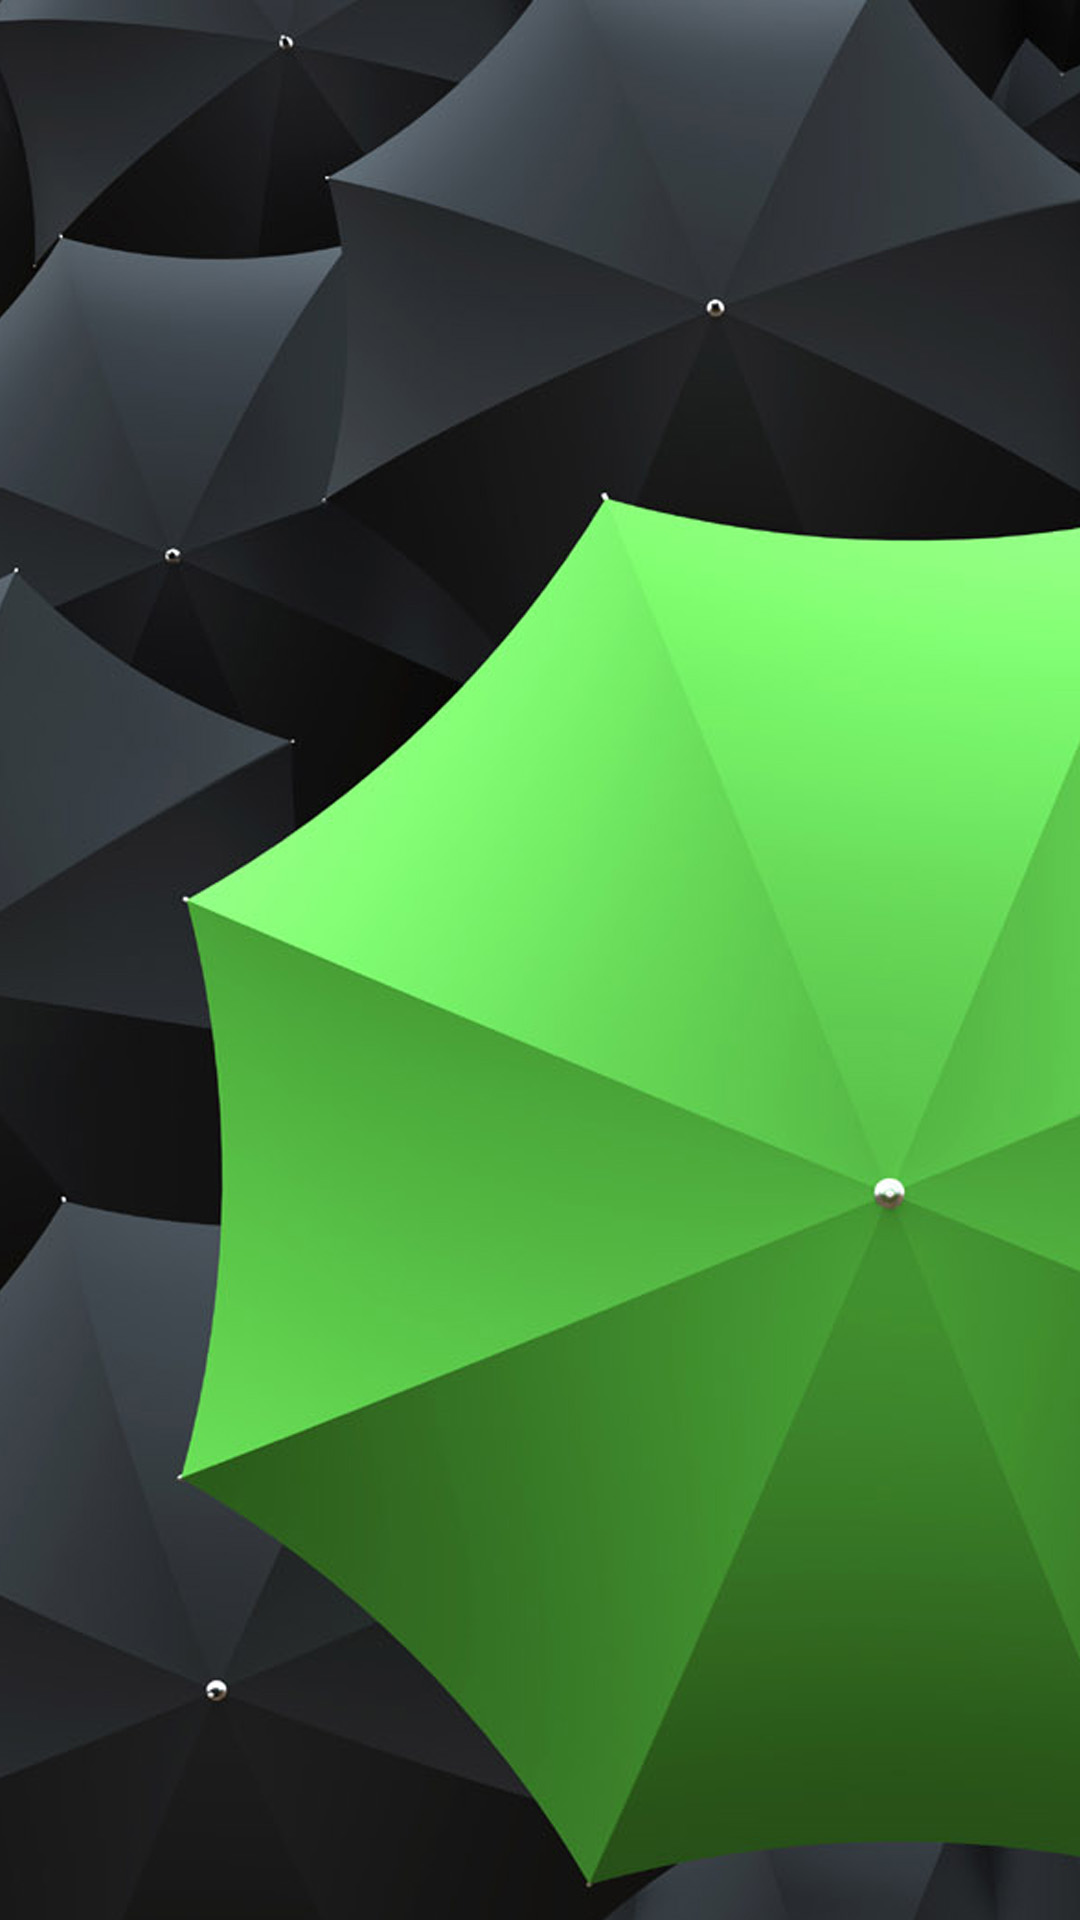 Free download Green Umbrella Nexus 5 Wallpapers Nexus 5 wallpapers ...